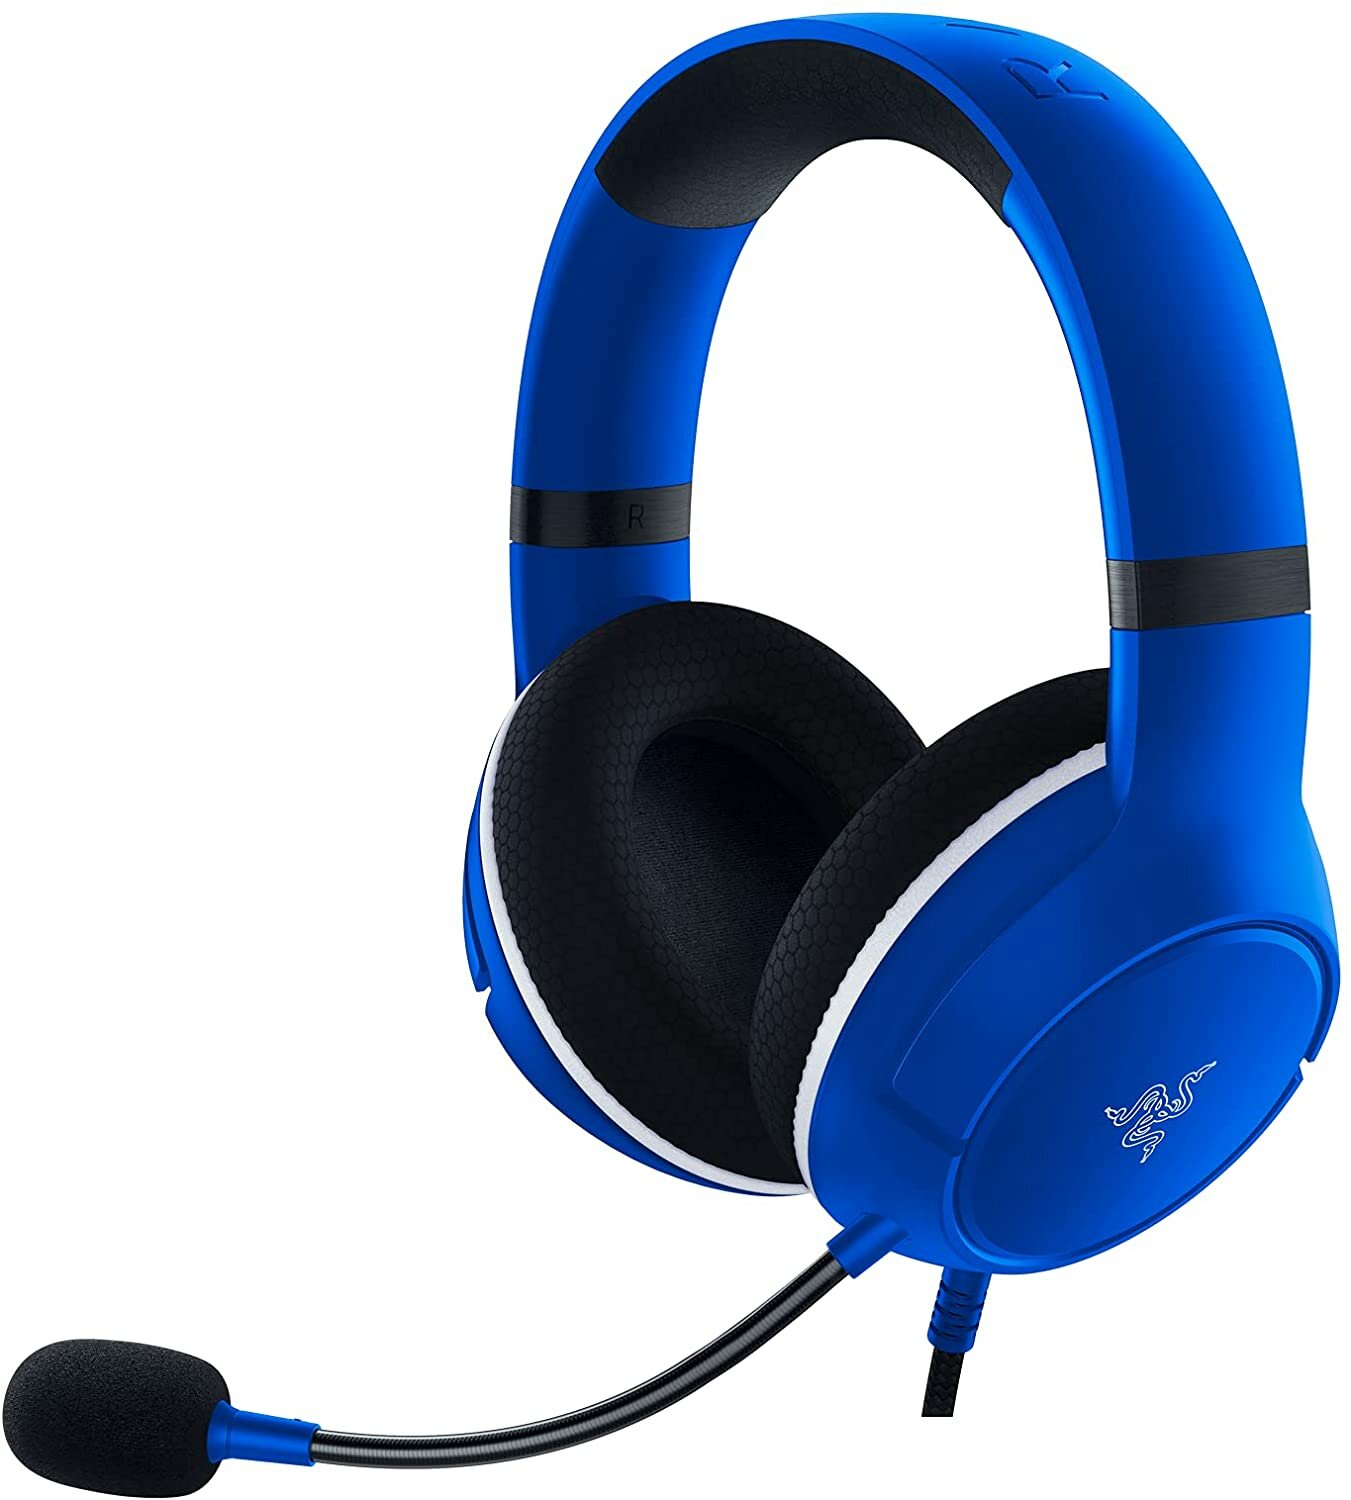 Игровая гарнитура Razer Kaira X for Xbox - Blue headset